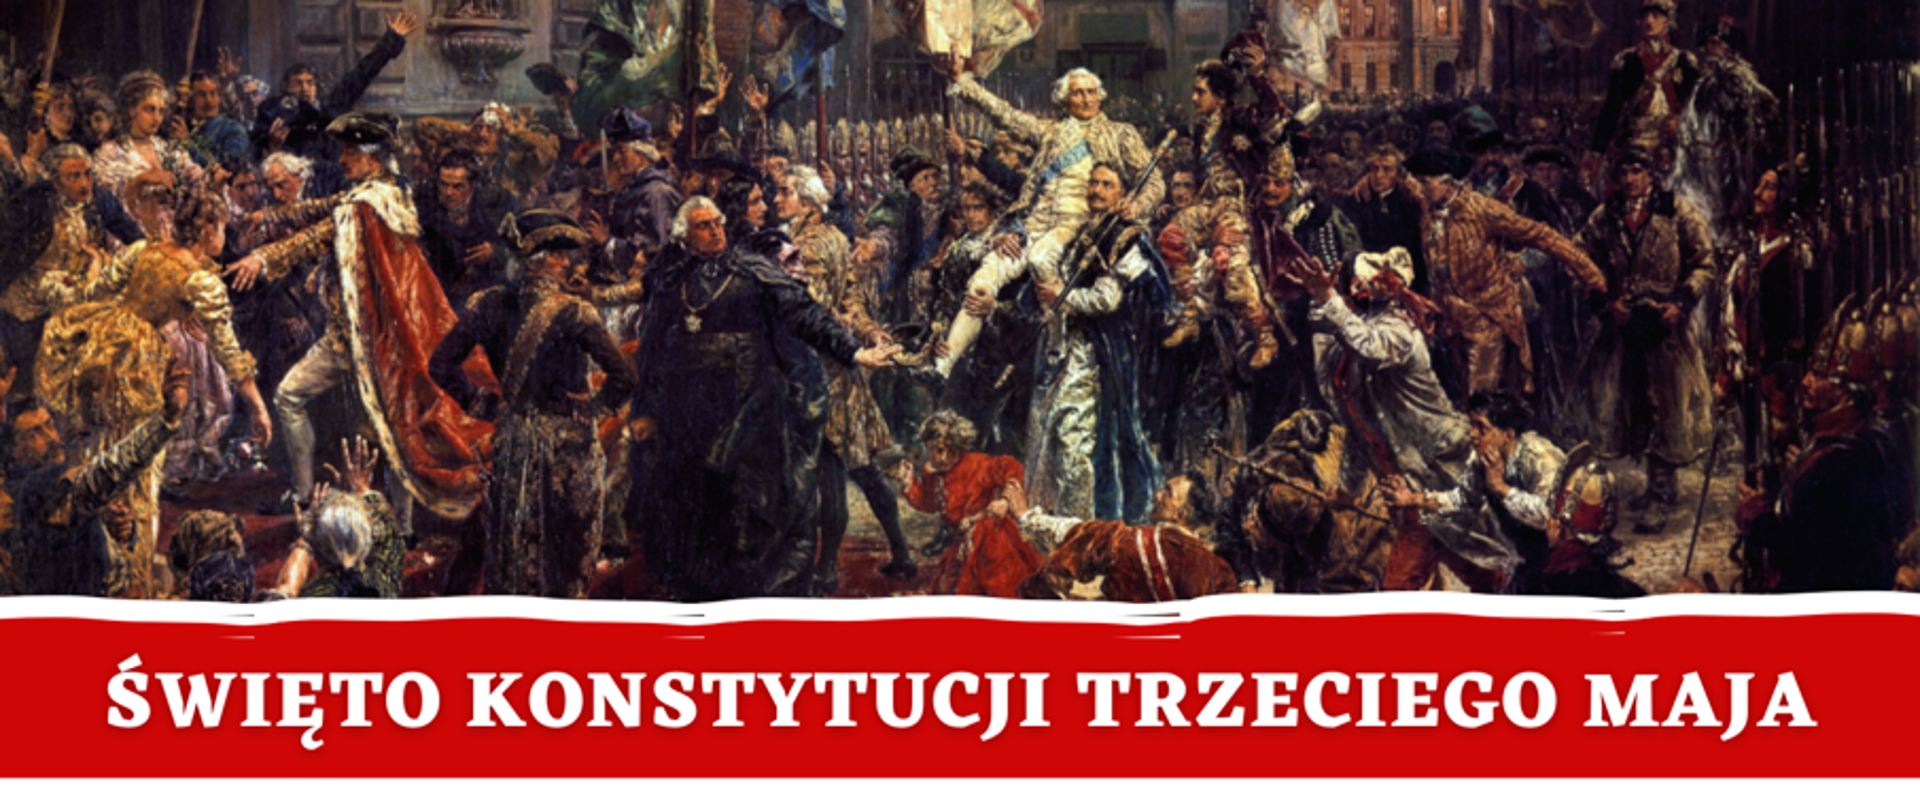 Plakat wydarzenia z programem, obraz Jana Matejki Święto Konstytucji 3 Maja